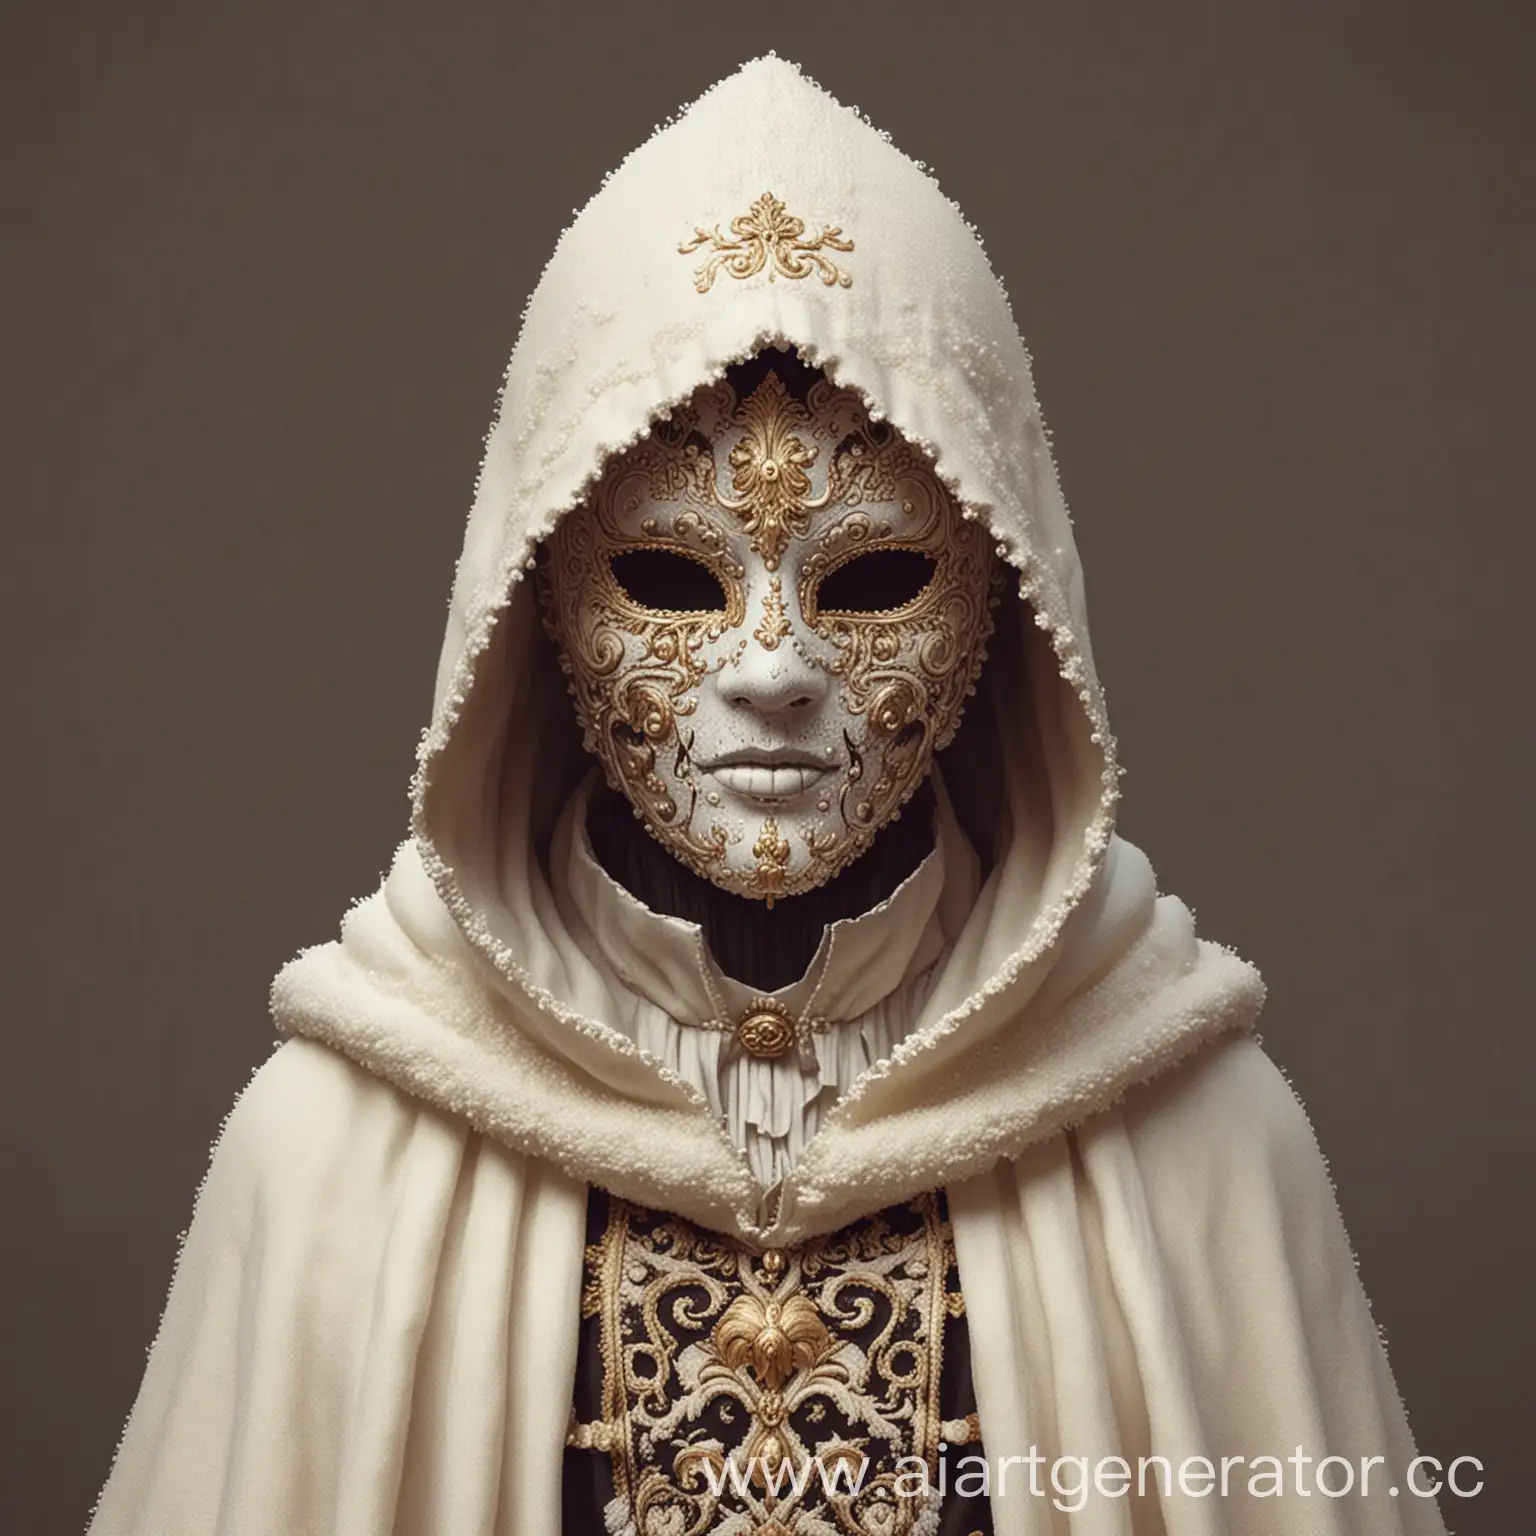 Пиксельная графика, загадочный персонаж в маске, одетый в белую шерстяную накидку, сам персонаж выполнен в стиле барокко 